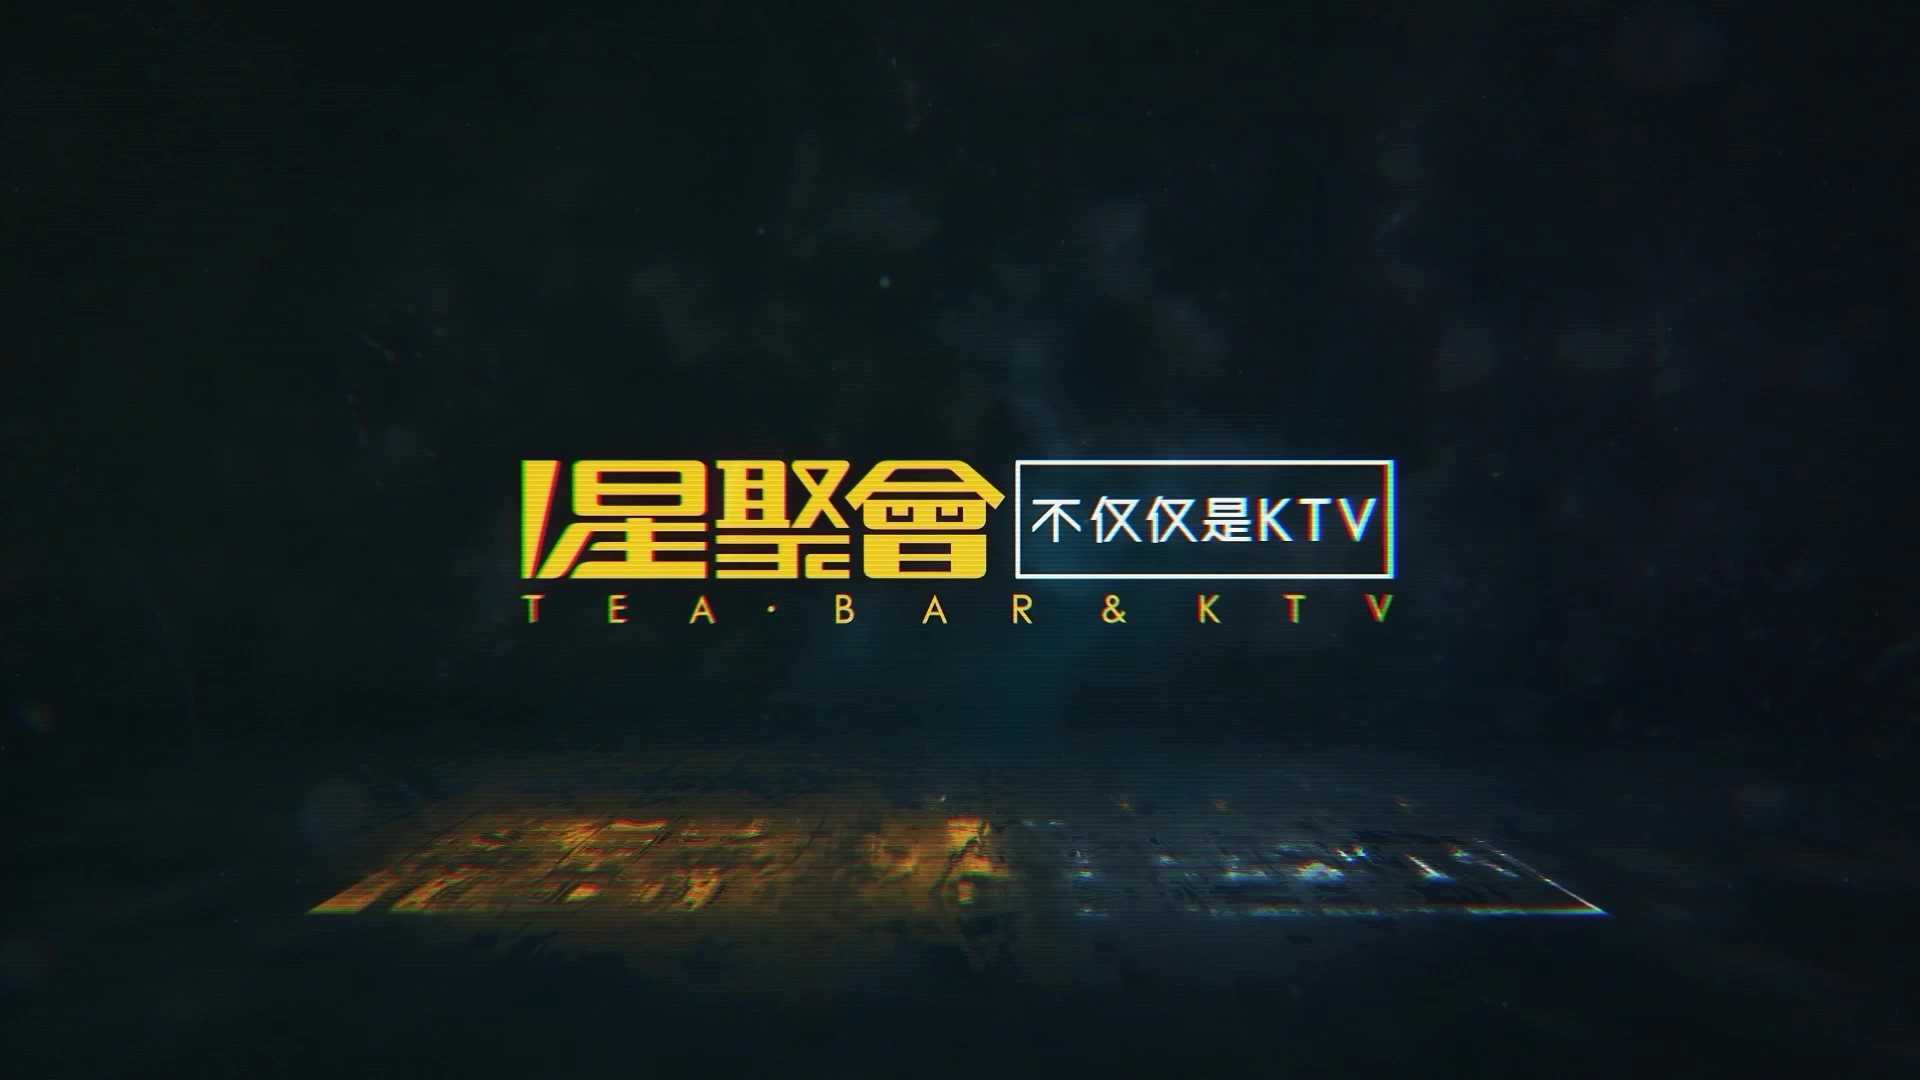 星聚会ktv 丨杭州短视频拍摄制作 - 拍好片